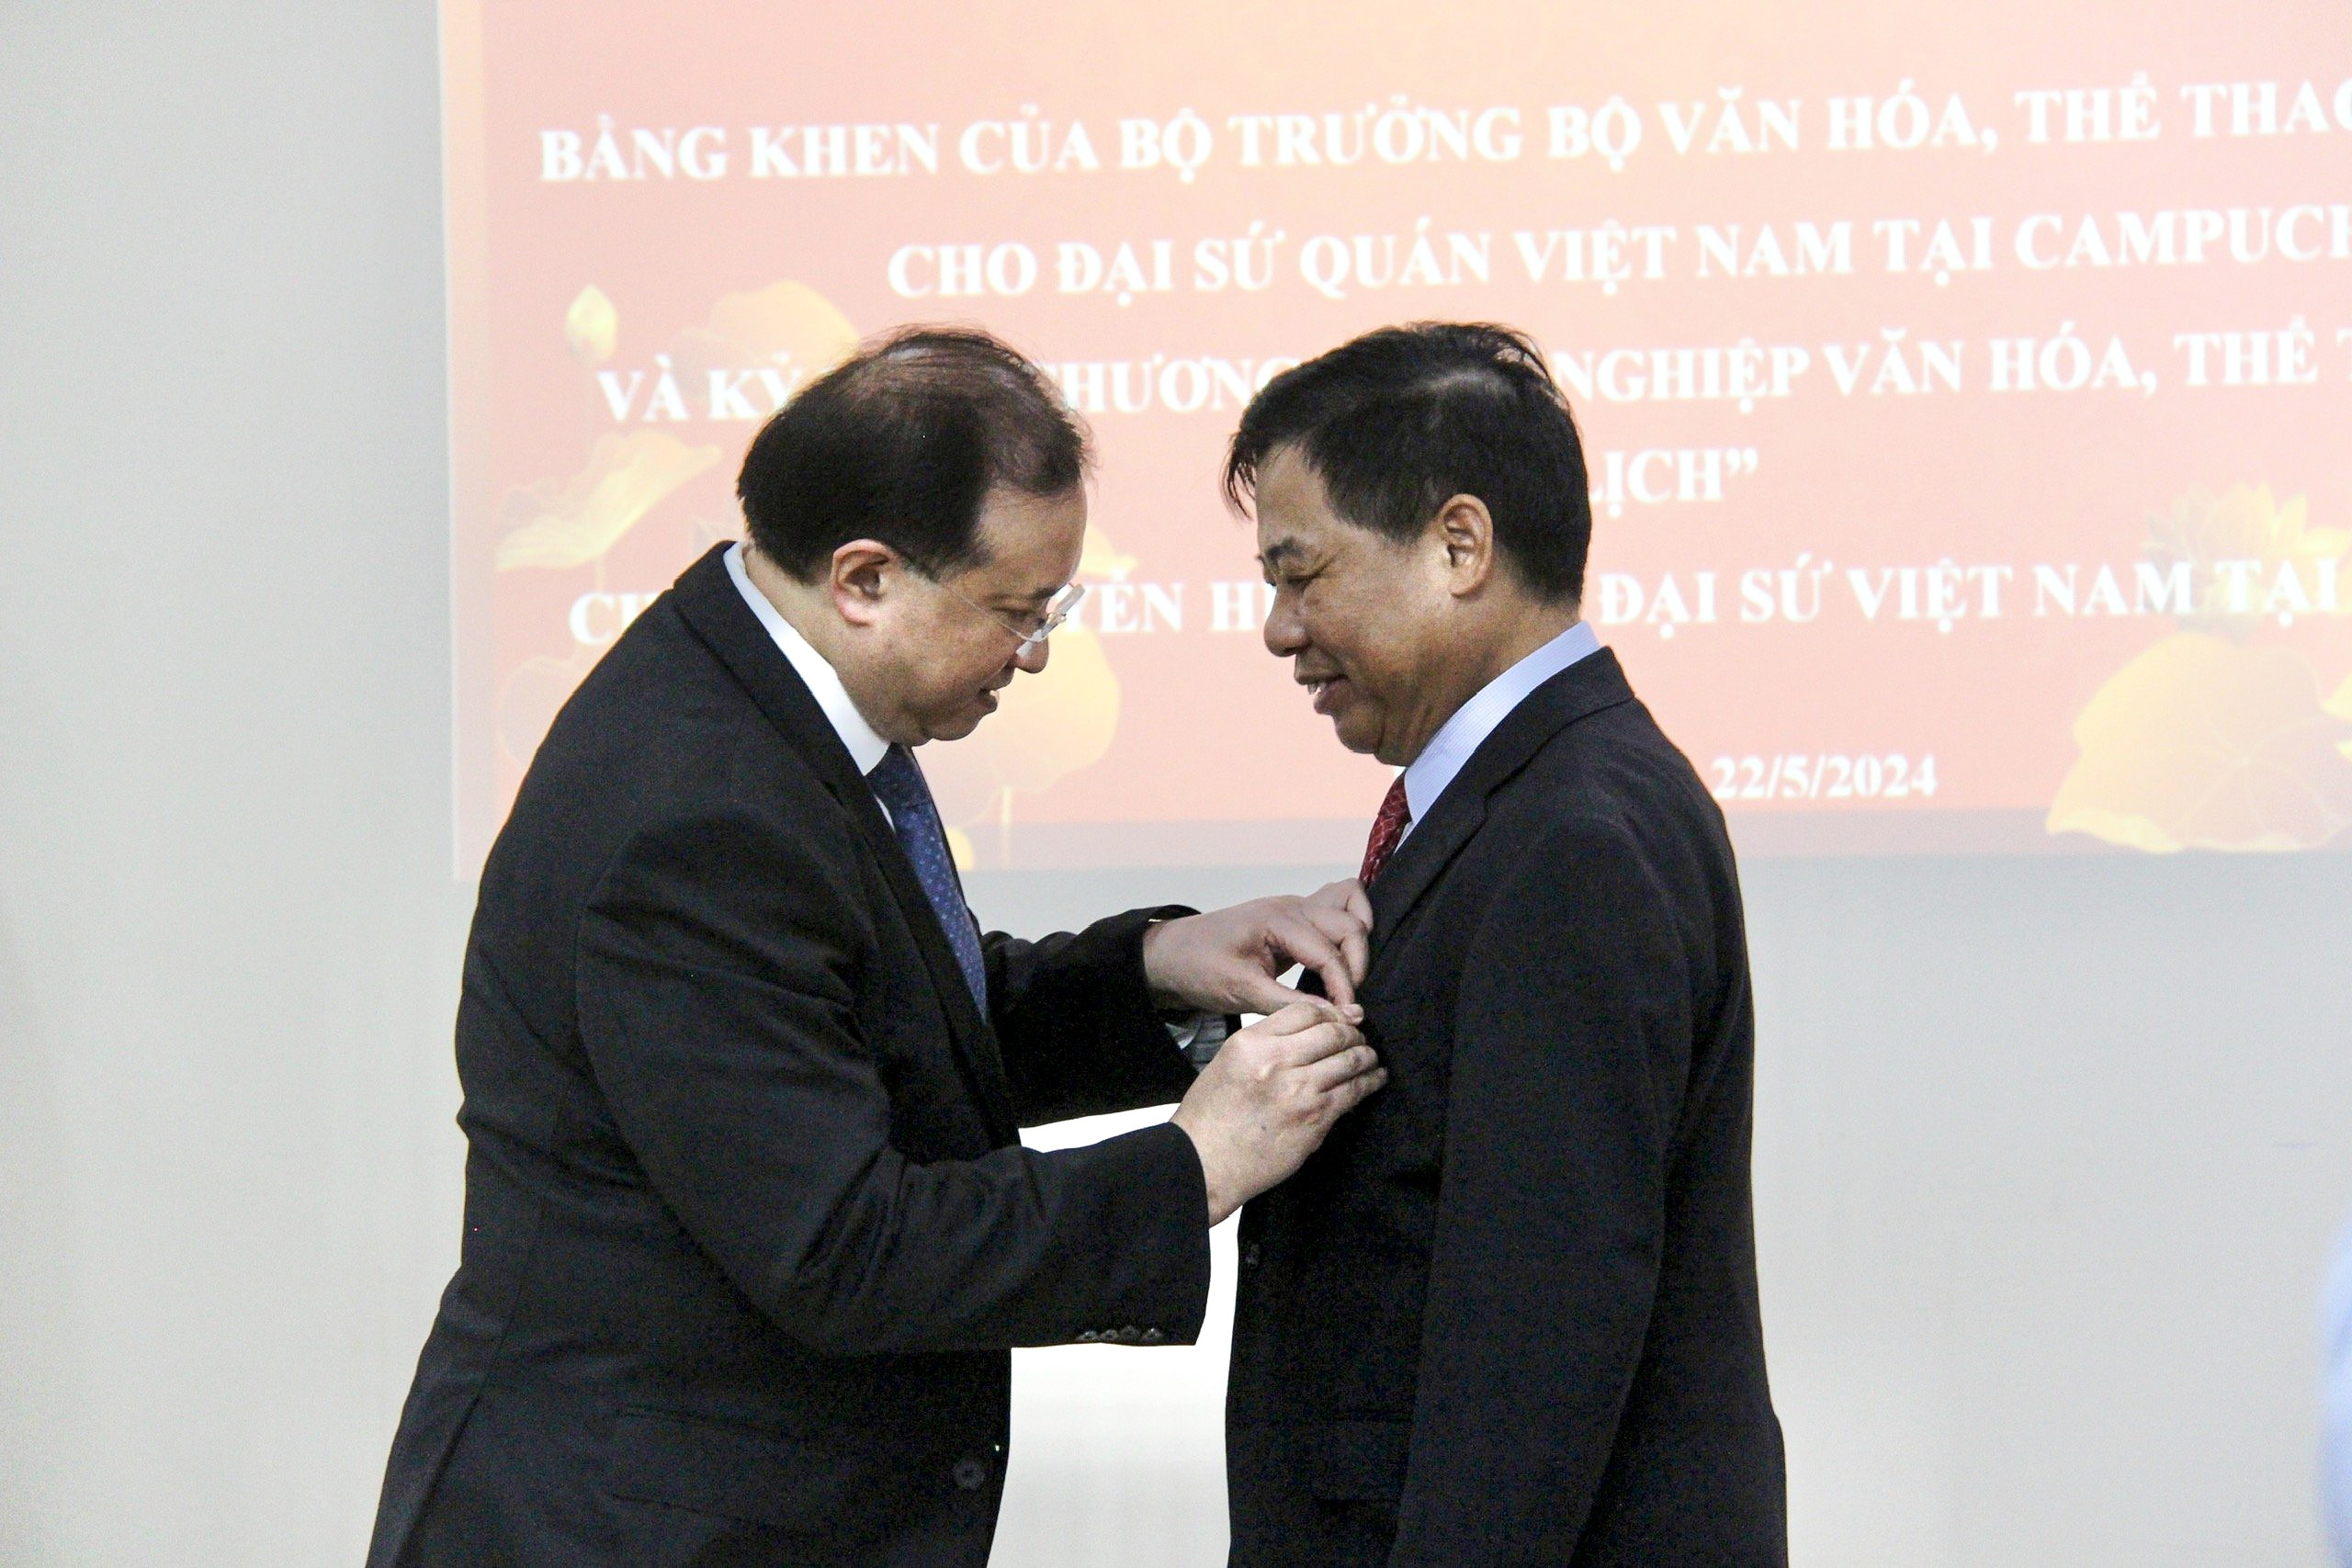  Thứ trưởng Bộ VH- TT&DL Tạ Quang Đông trao tặng Kỷ niệm chương “Vì sự nghiệp Văn hoá, Thể thao và Du lịch” cho Đại sứ Việt Nam tại Campuchia Nguyễn Huy Tăng.